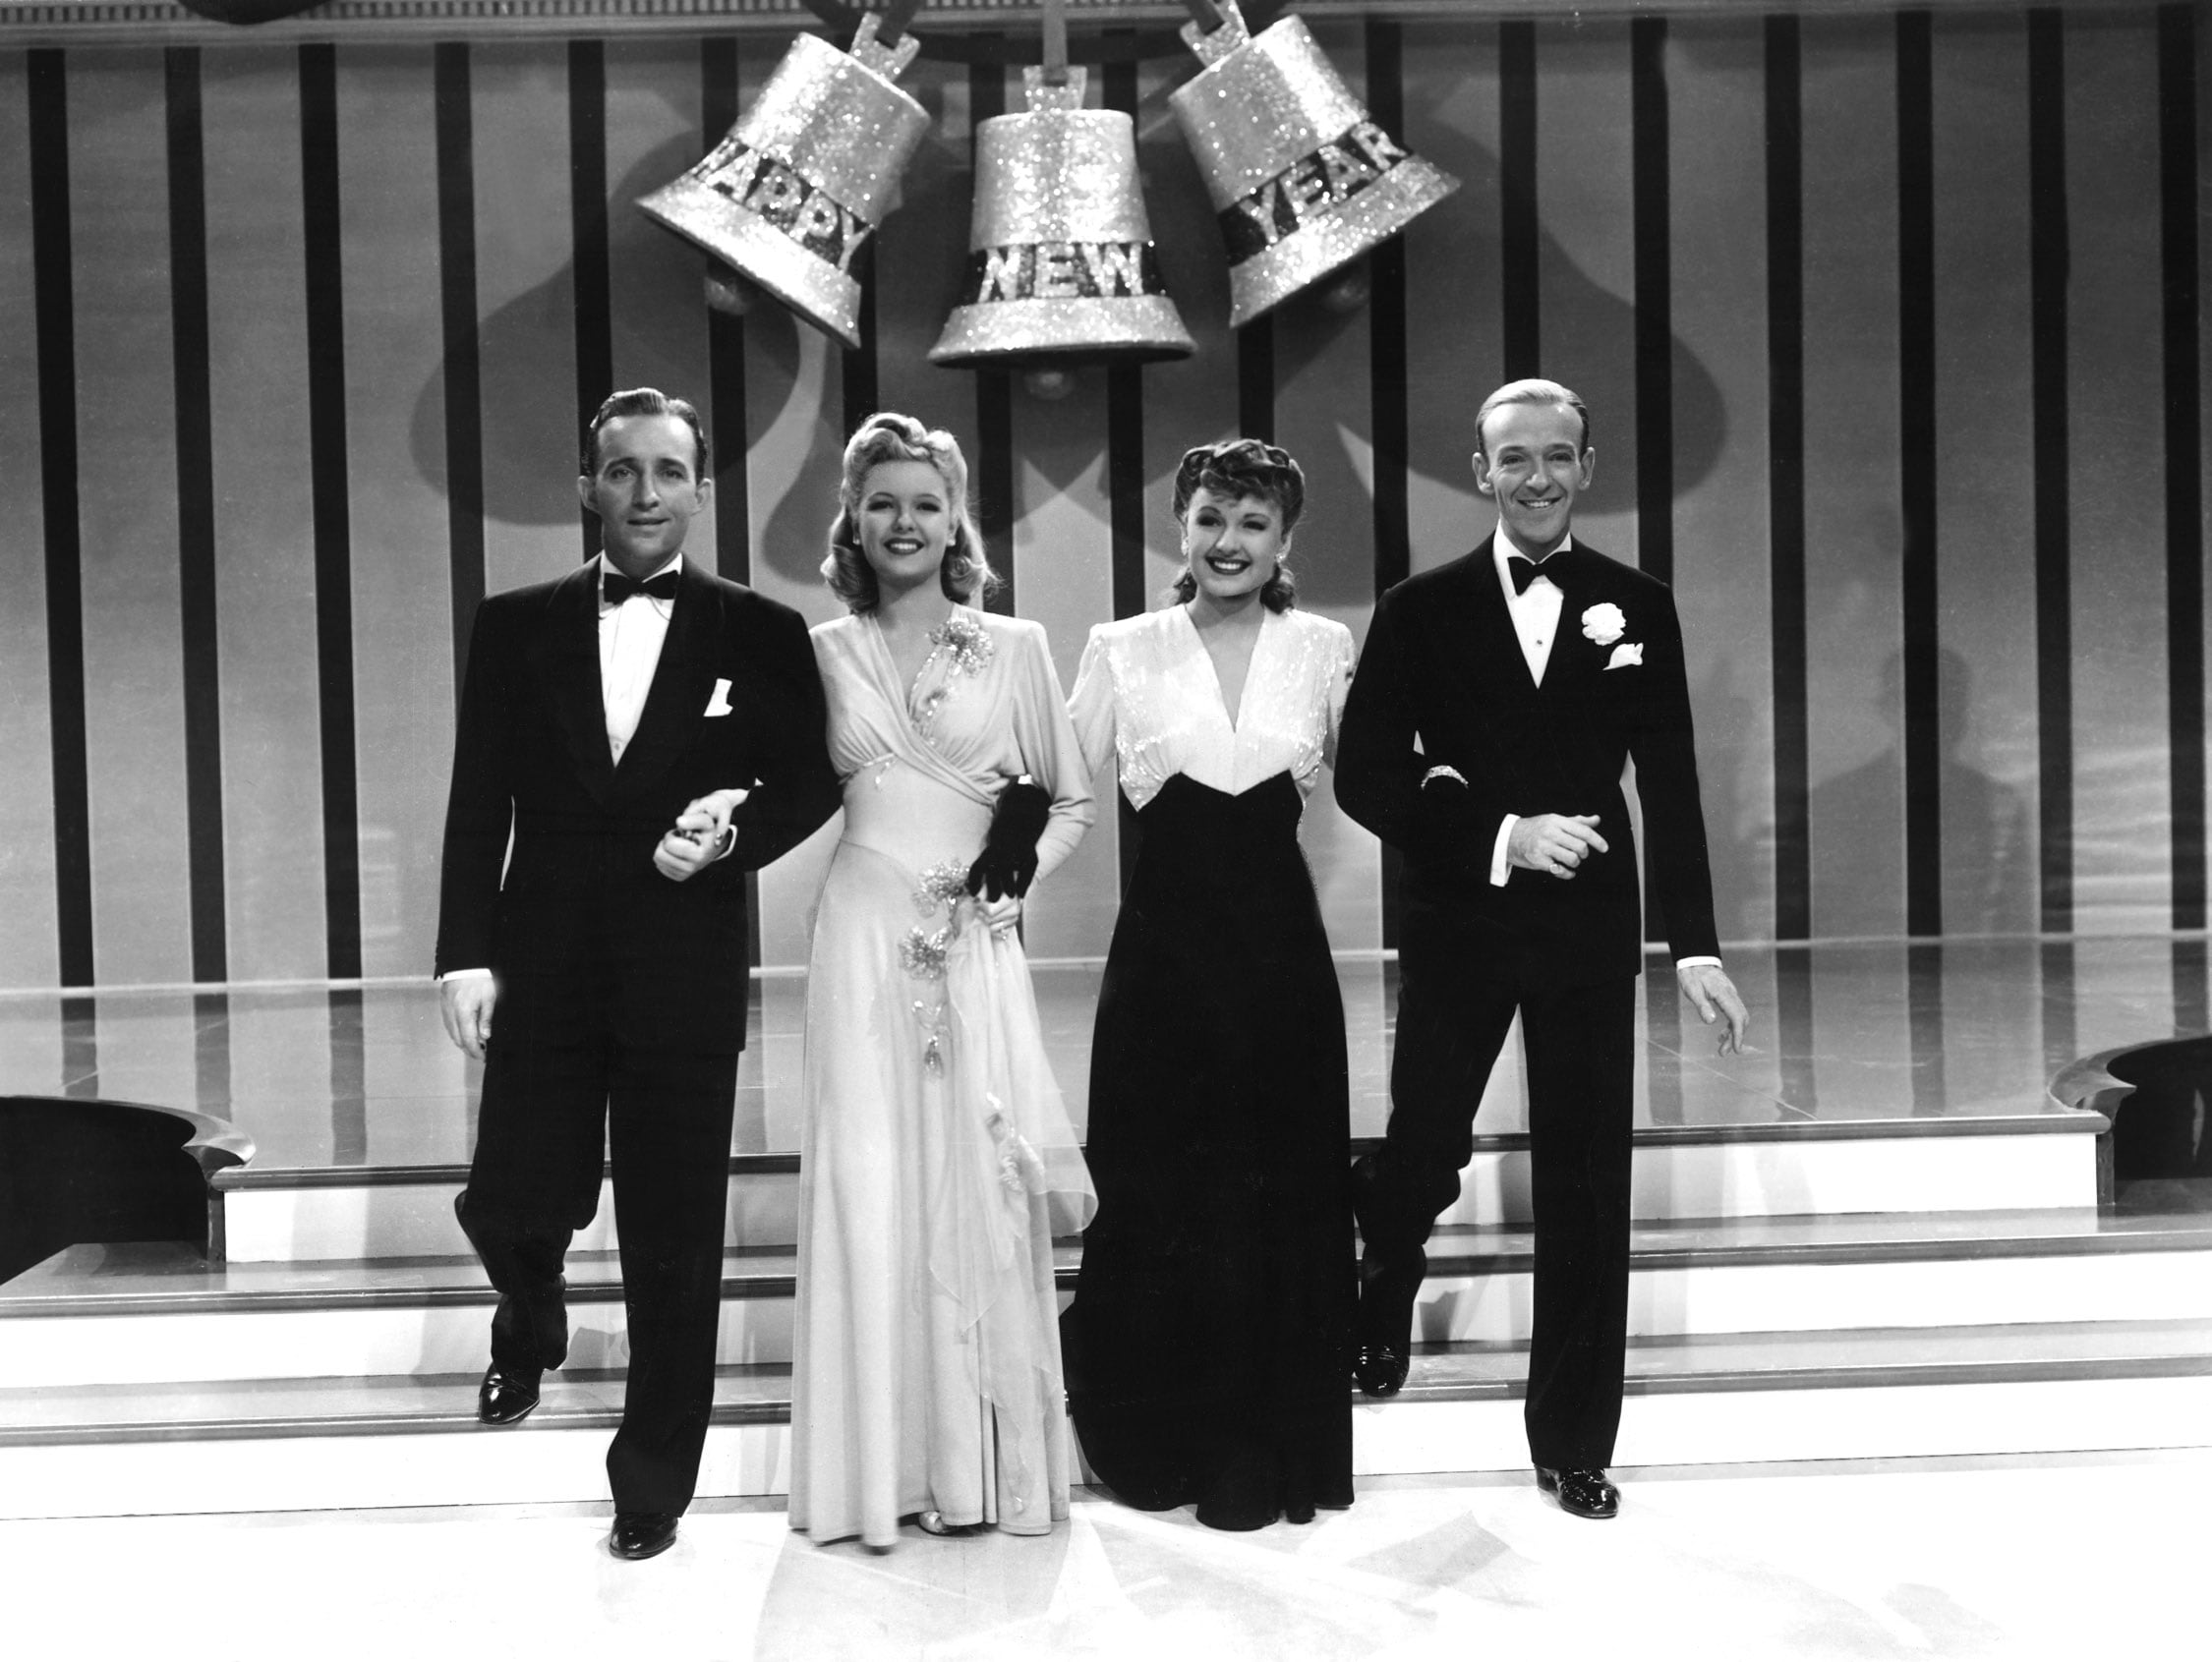 La taverna dell'allegria, 1942. Fred Astaire con Bing Crosby, Virginia Dale e Marjorie Reynolds